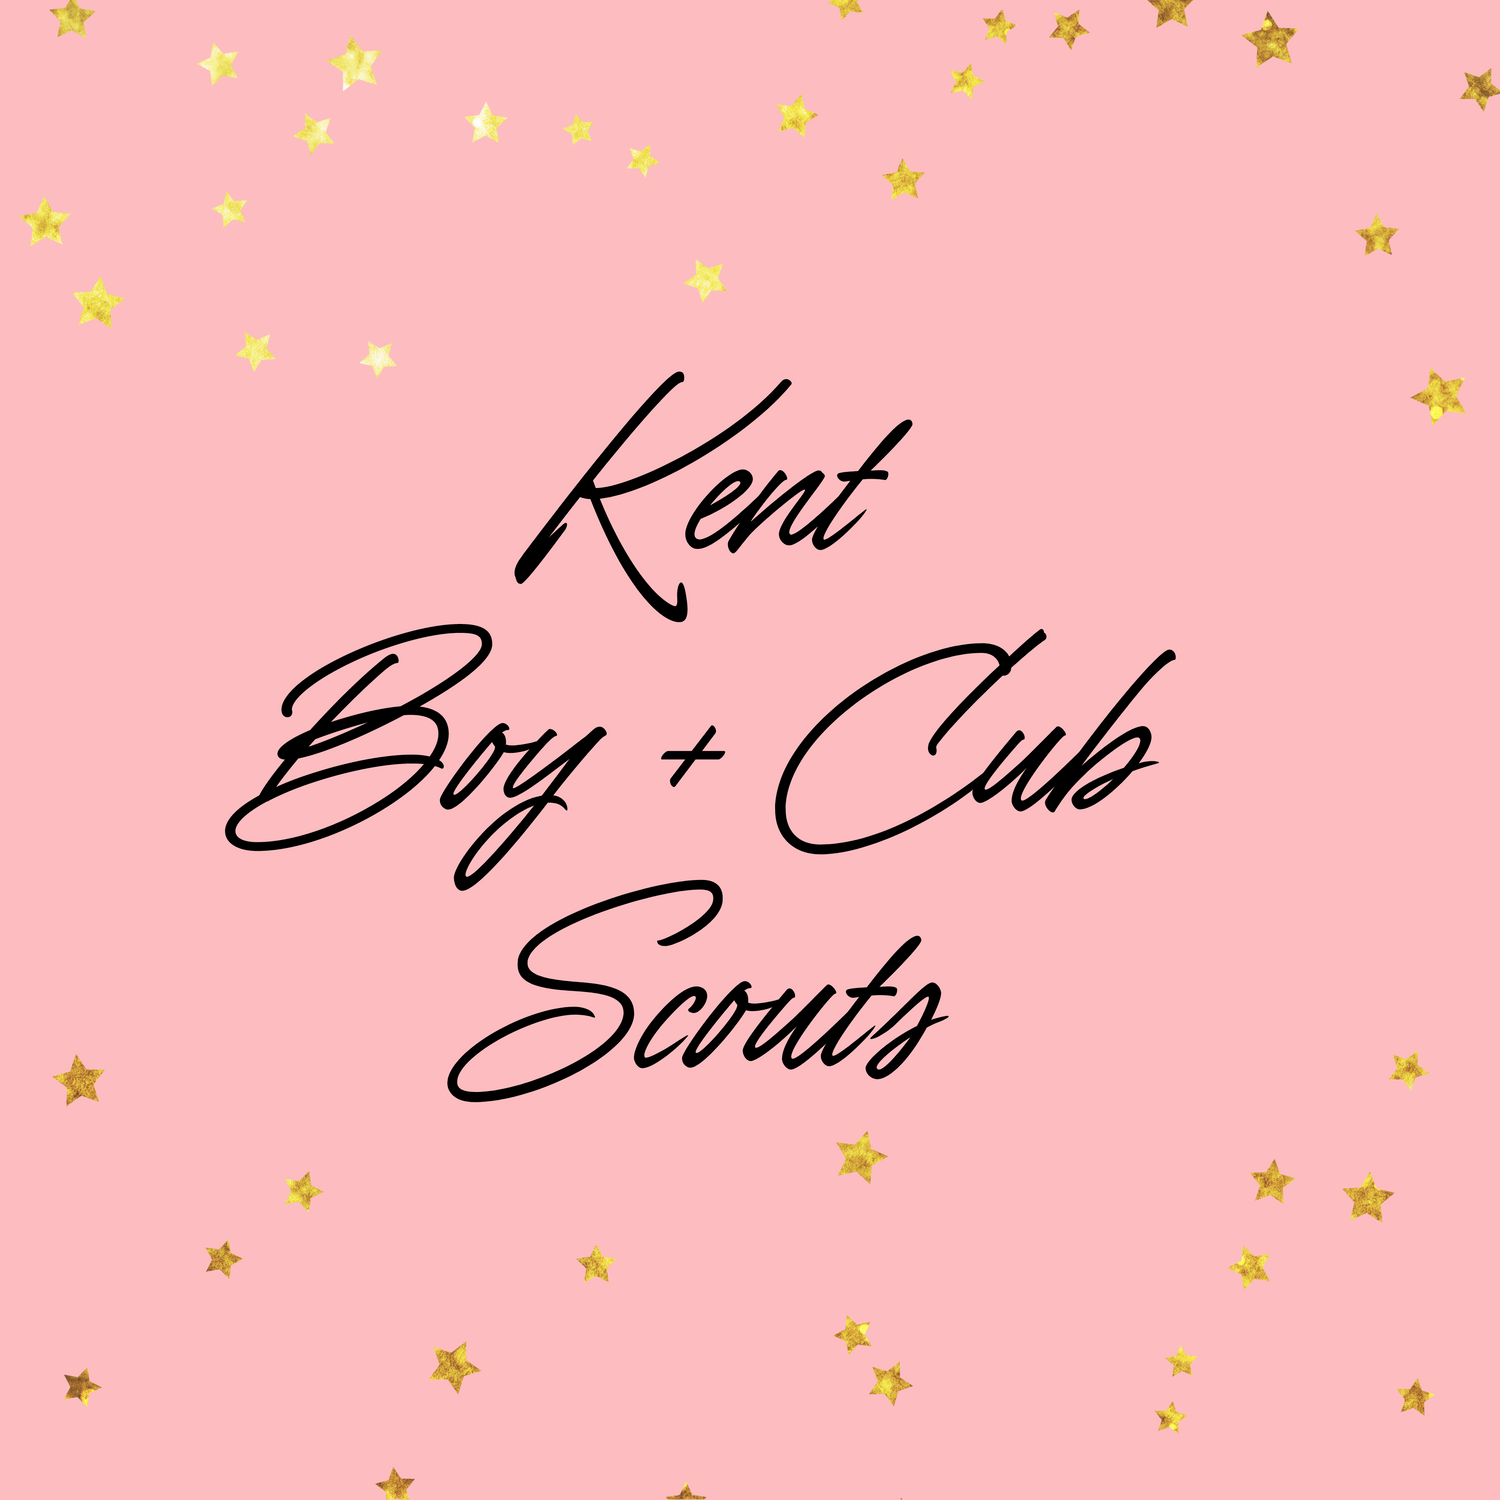 Kent Boy & Cub Scouts